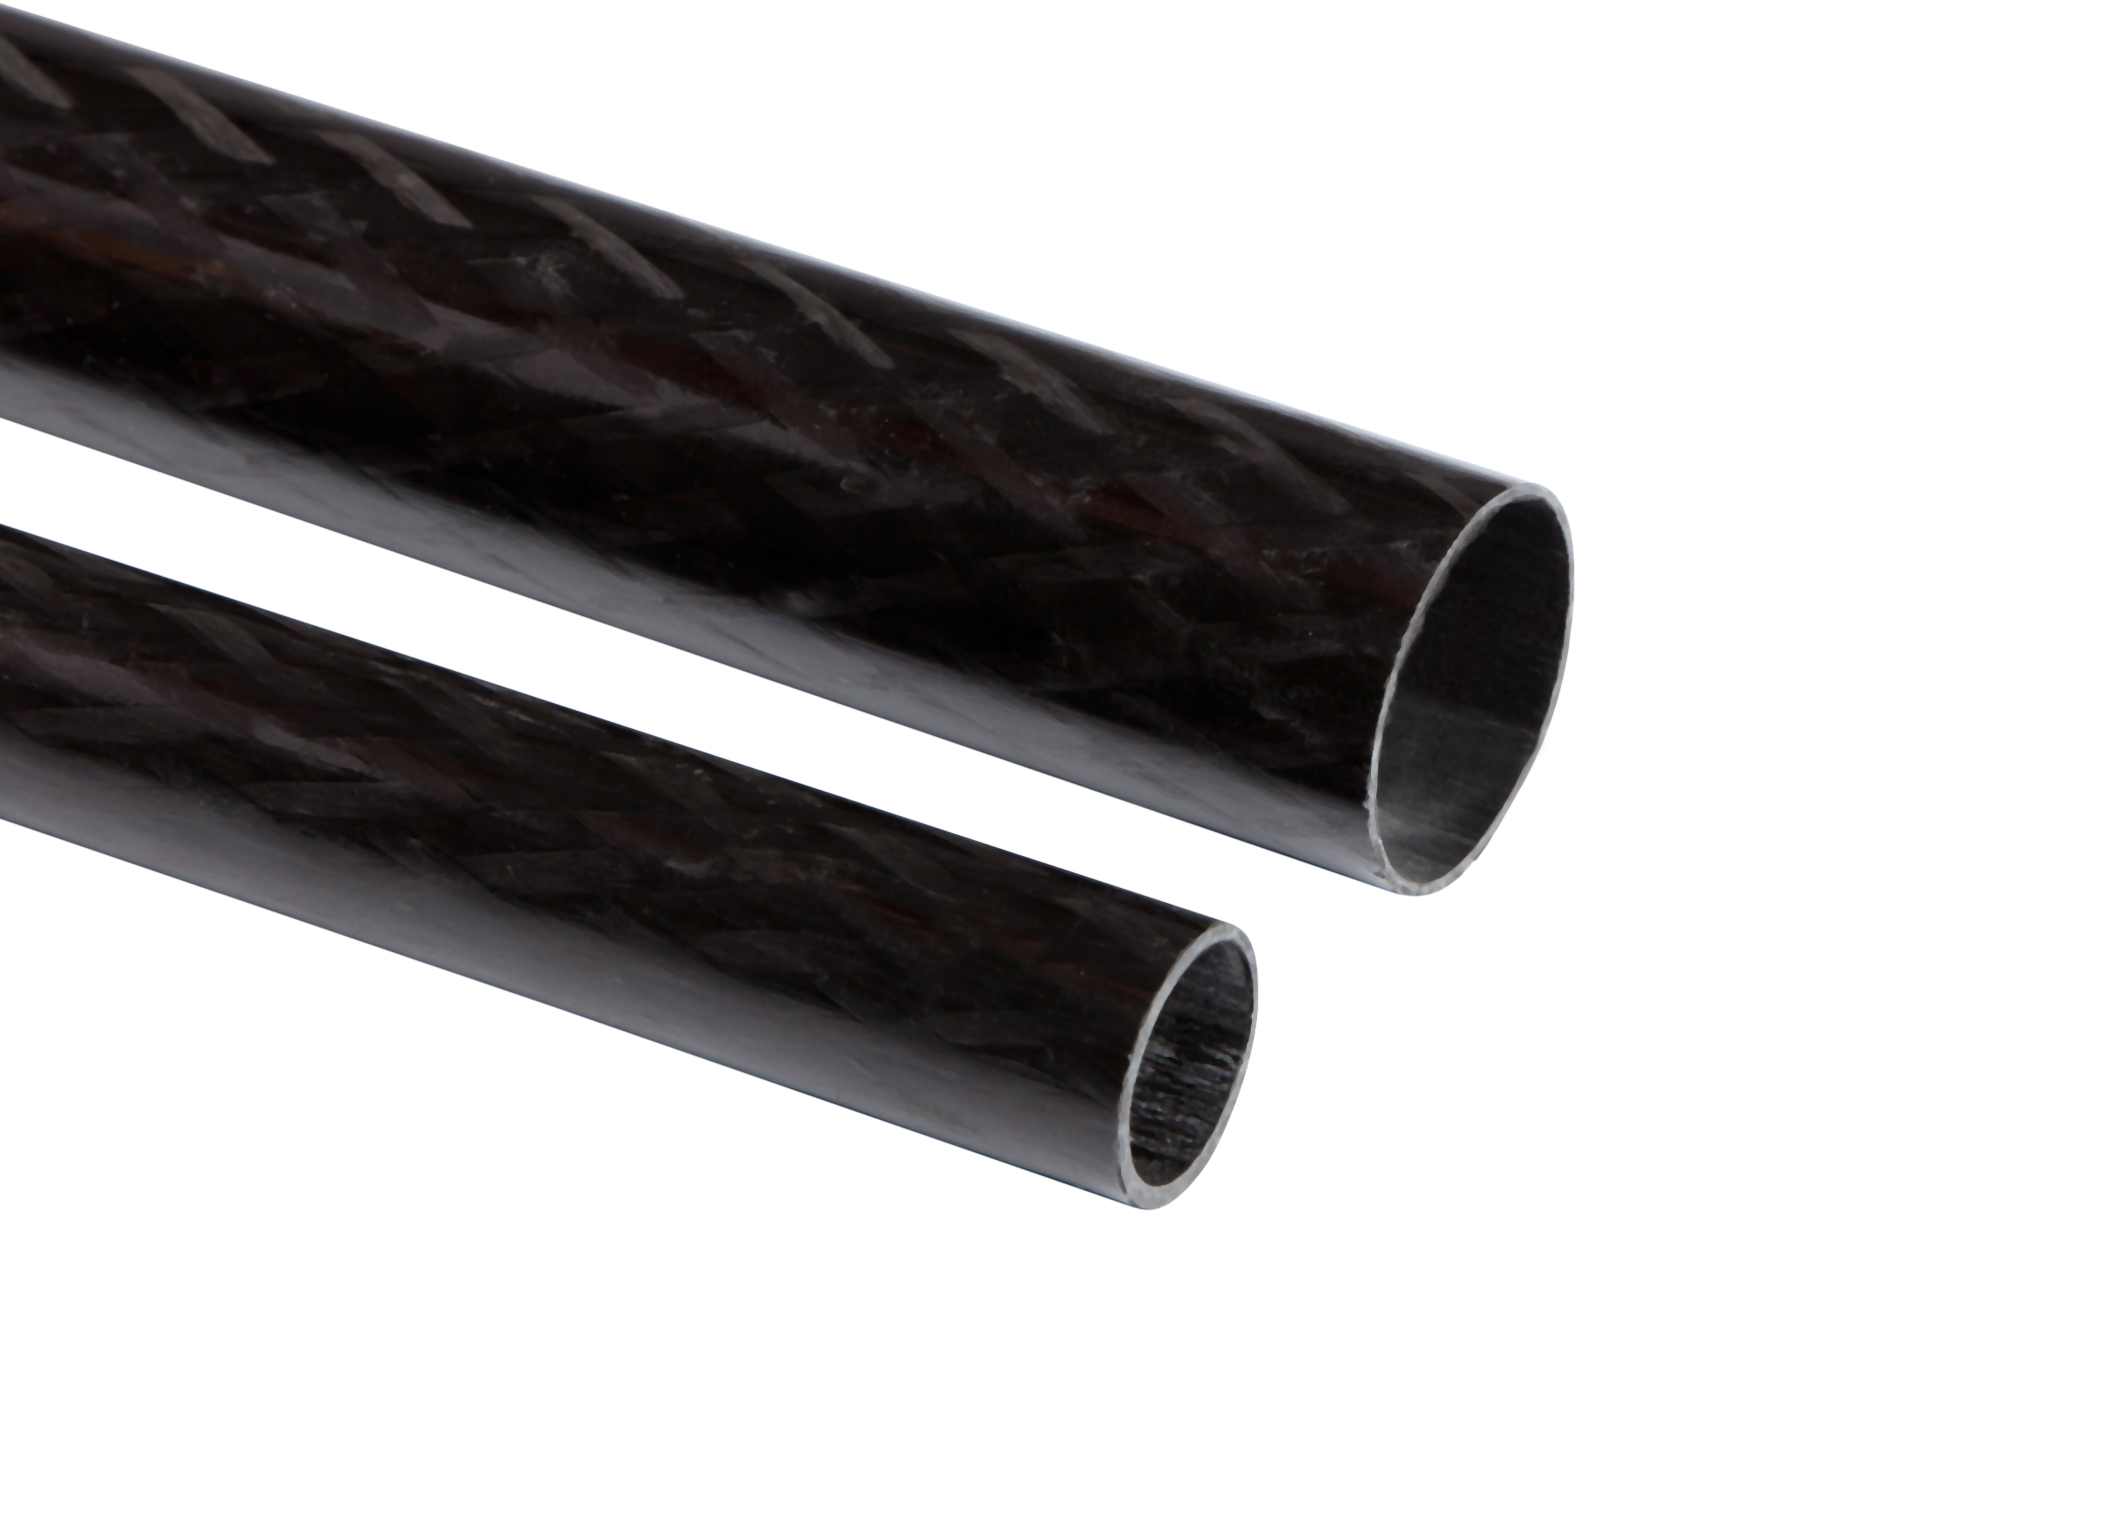 0.8 m Fibre Roll Wrapped 3k Carbon Fiber Tube 1 x OD 8mm x ID 6mm x 800mm